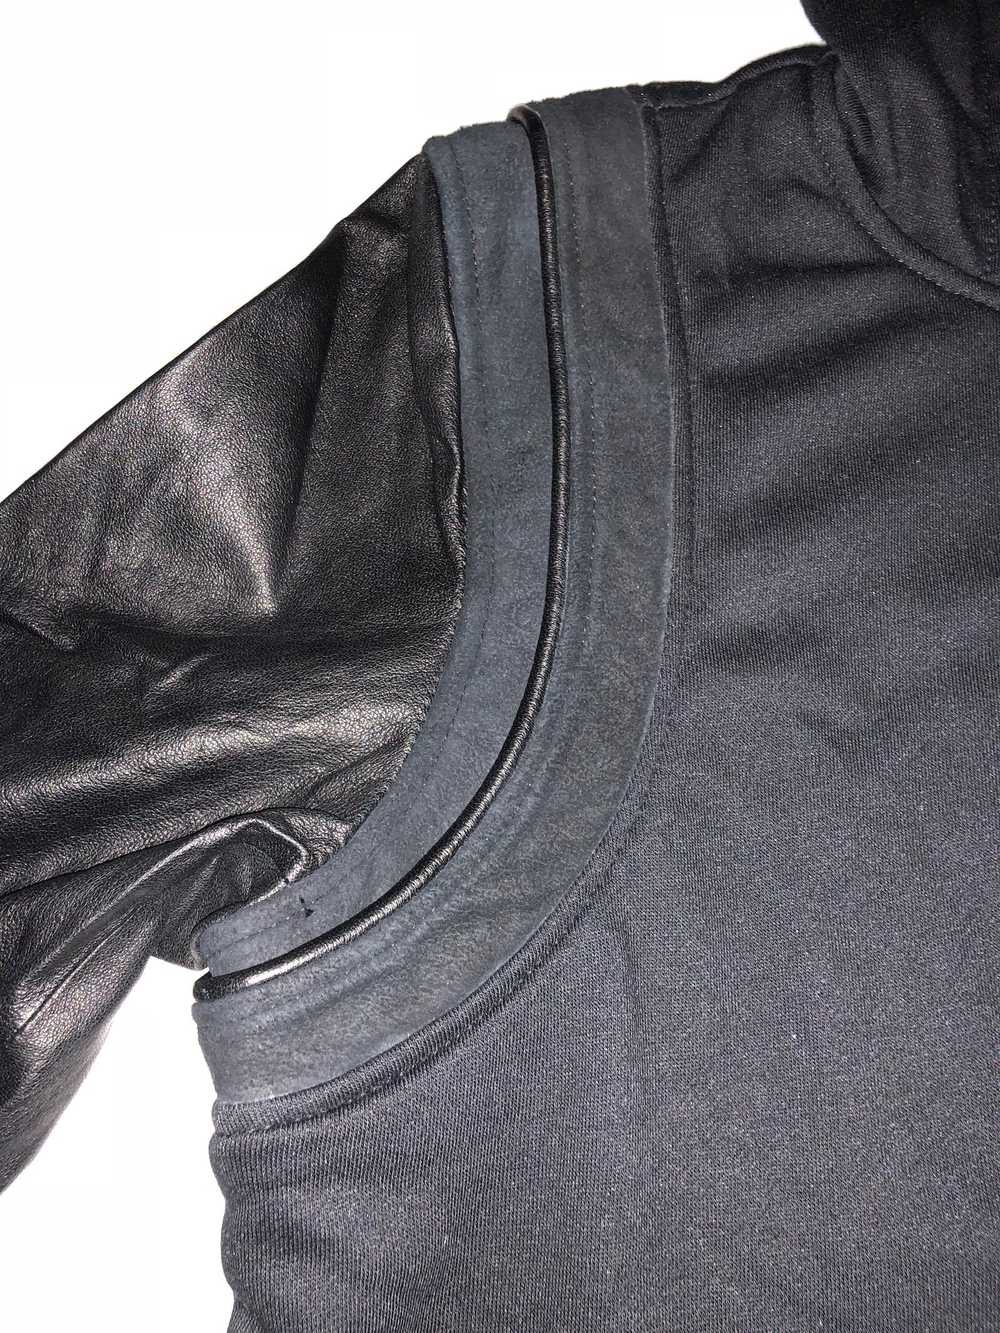 Iro Black Leather Sleeve Hoodie - image 5